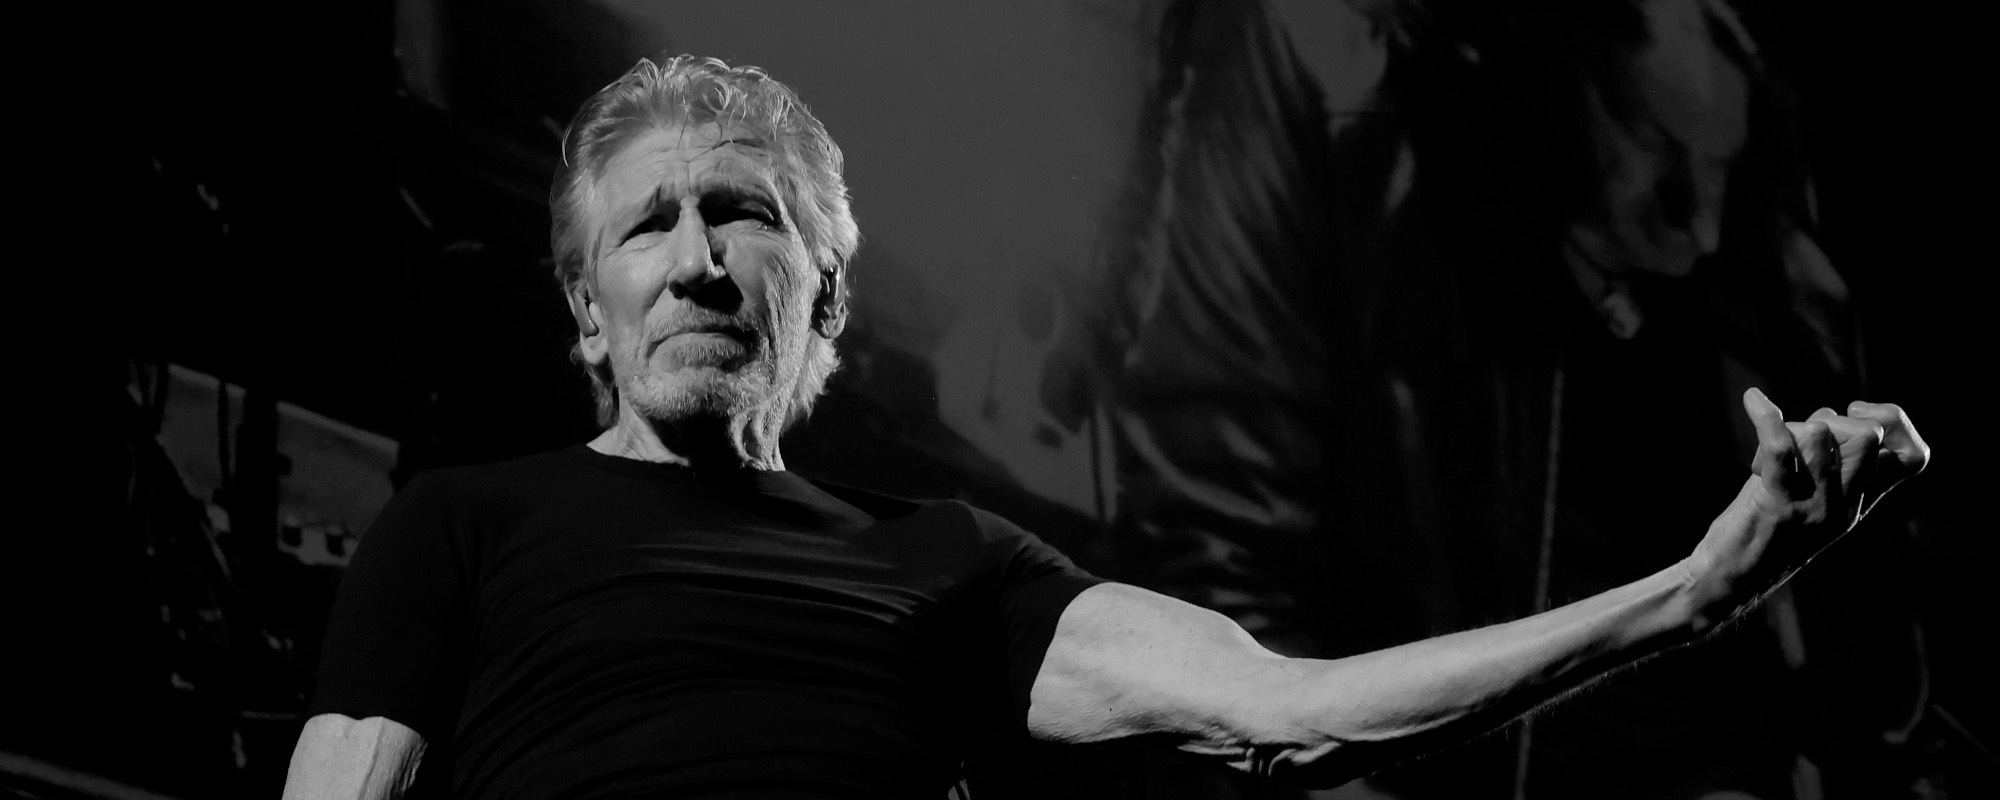 Roger Waters partage la signification de « Breathe » après le redux de « Dark Side of the Moon »